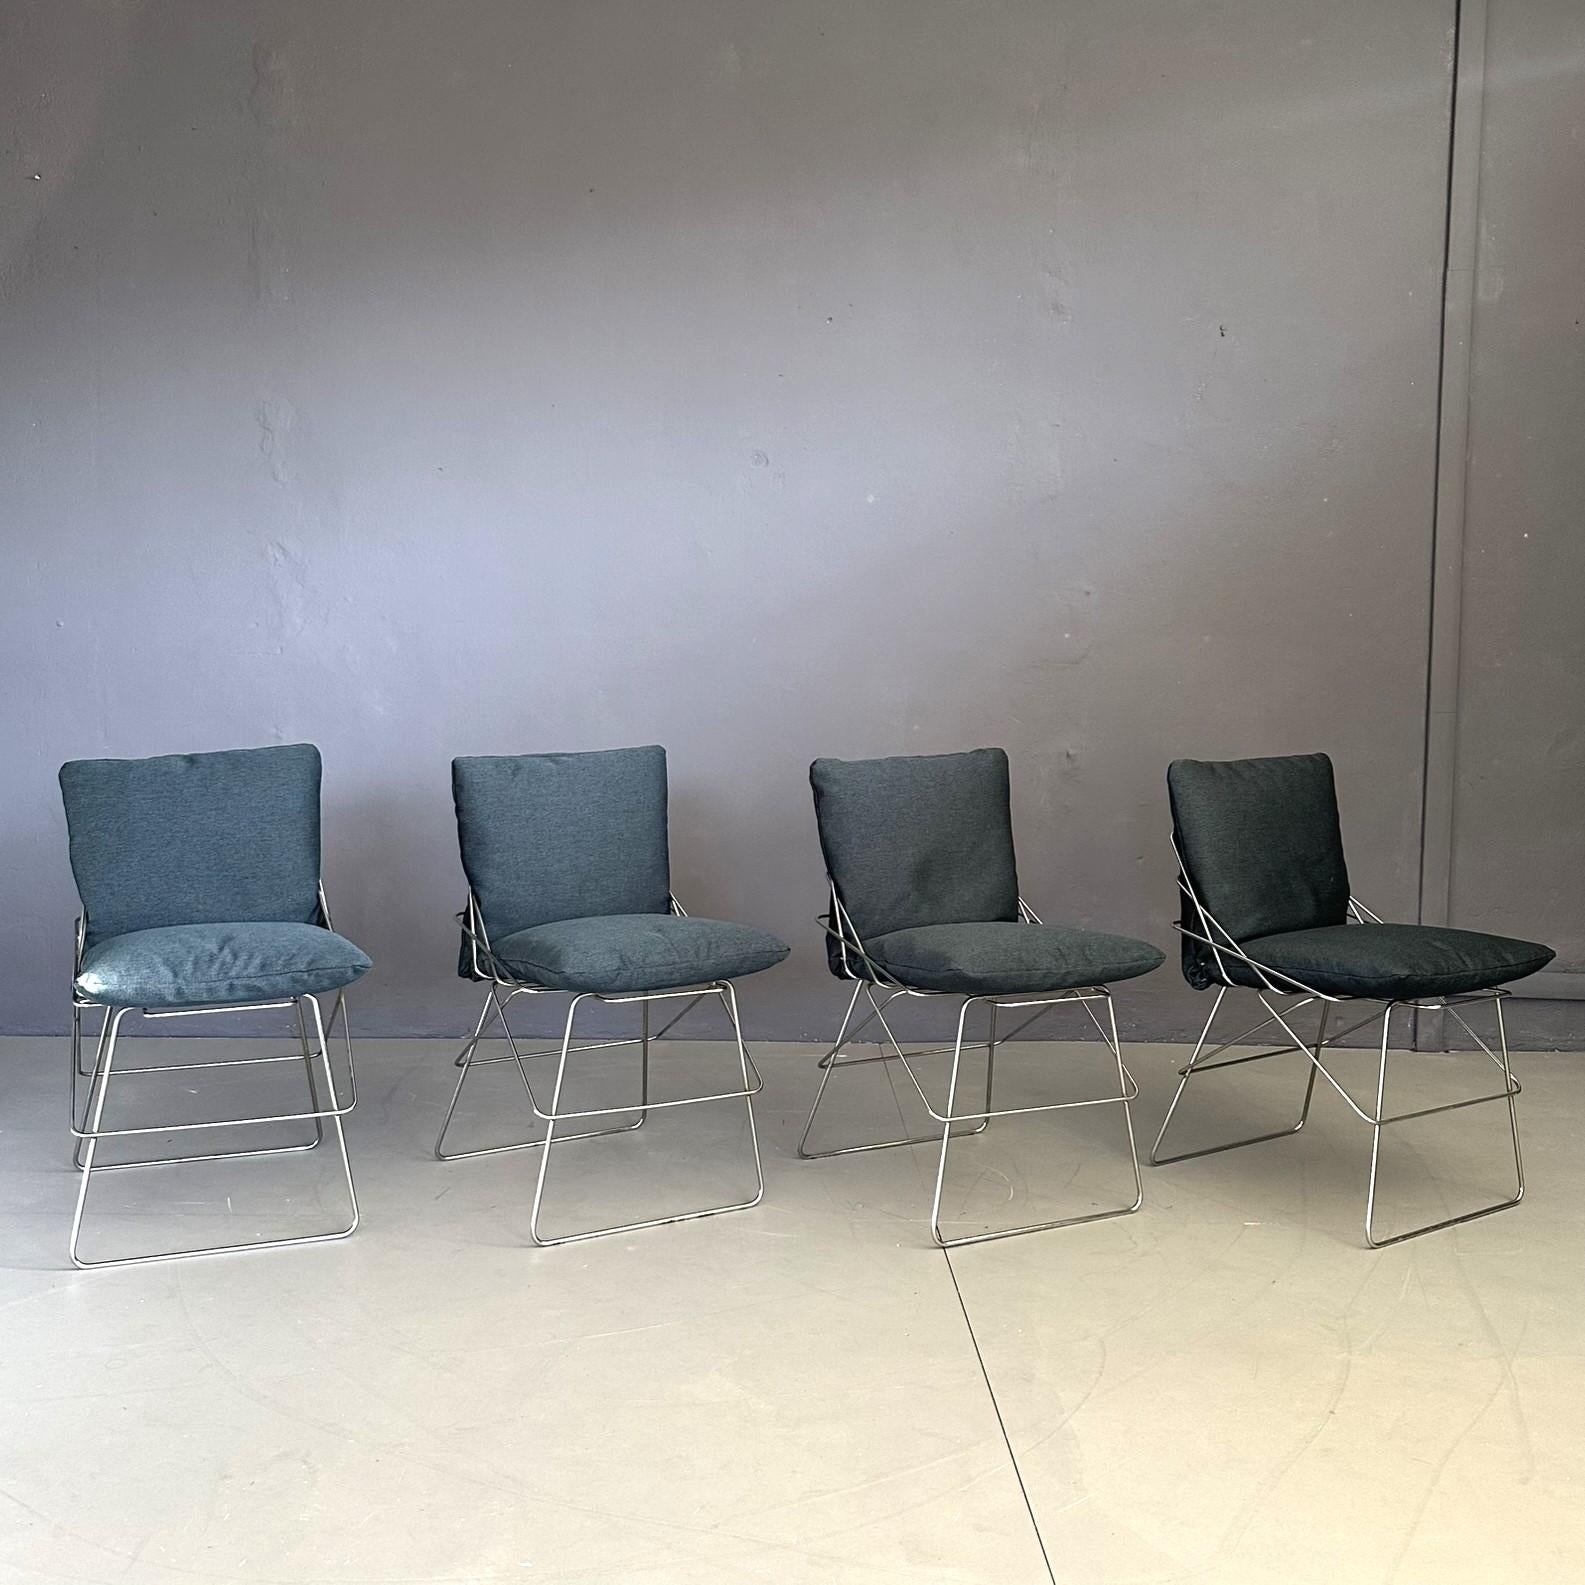 
Satz von vier Stühlen Modell SOF SOF Design von Enzo Mari, für Daride 70s. Struktur aus verchromten Metallstäben, Sitz und Rückenlehne mit blauem Stoff gepolstert.
Ein Sitz, der die Wesentlichkeit und Eleganz des Designs von Enzo Mari